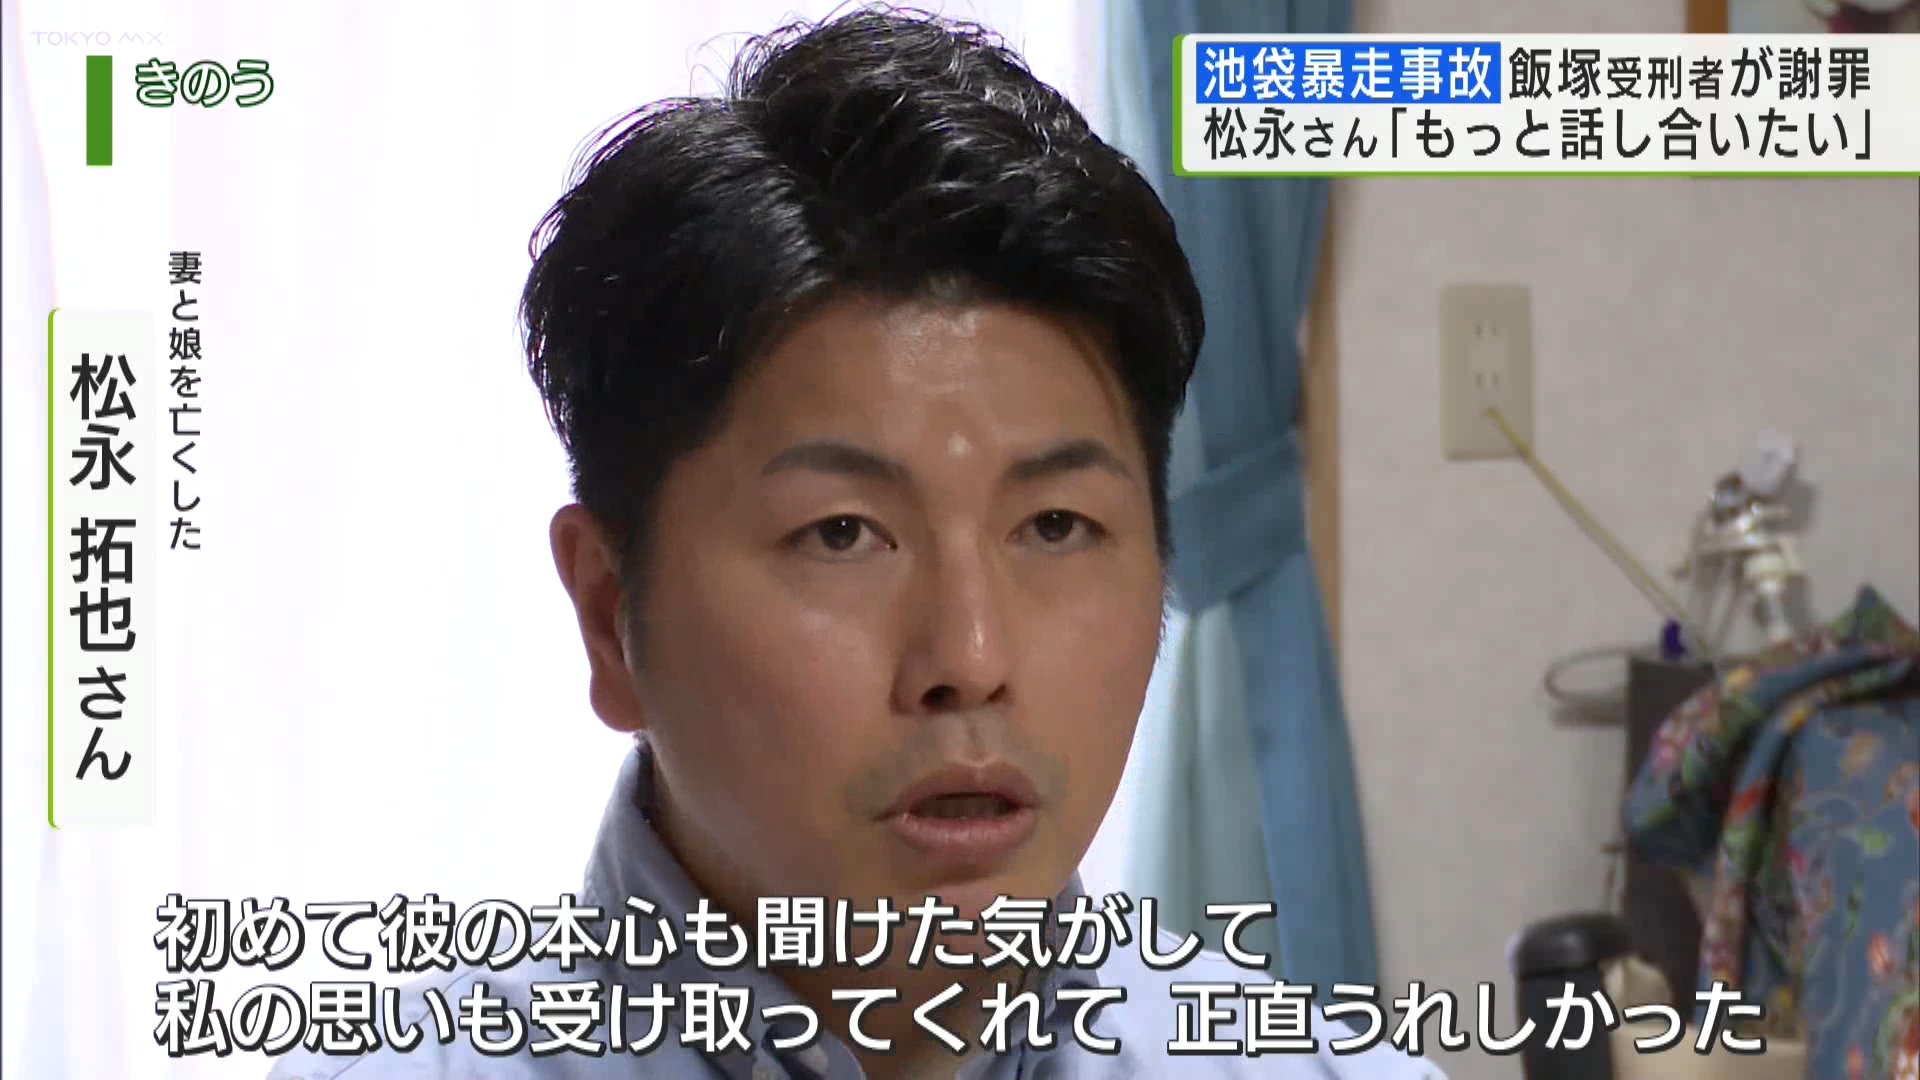 2019年に池袋で起きた暴走事故で、妻と娘を亡くした松永拓也さんに対し、事故を起こして服役中の飯塚幸三受刑者が、文書で謝罪の意とともに、今後面会に応じる考えを示しました。